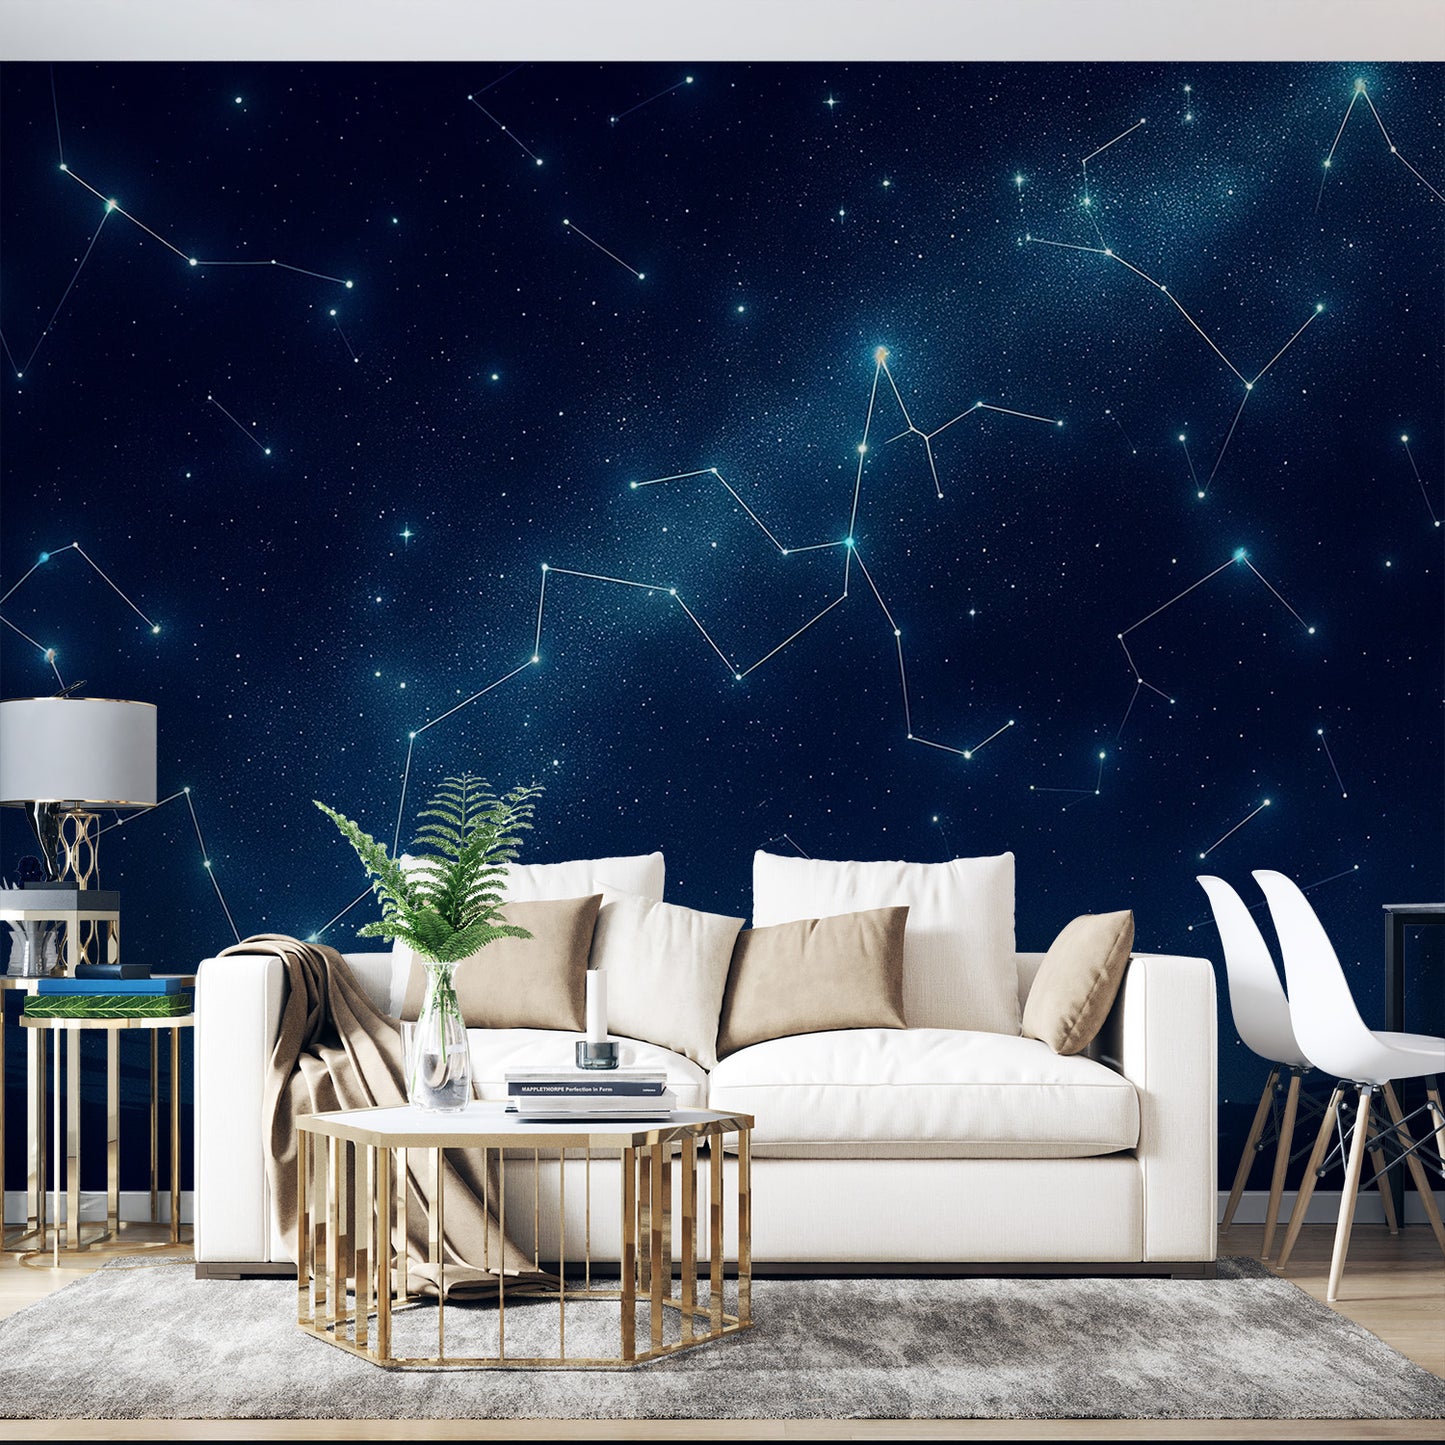 Papier peint constellation | Bleu nuit et lignée d'étoiles